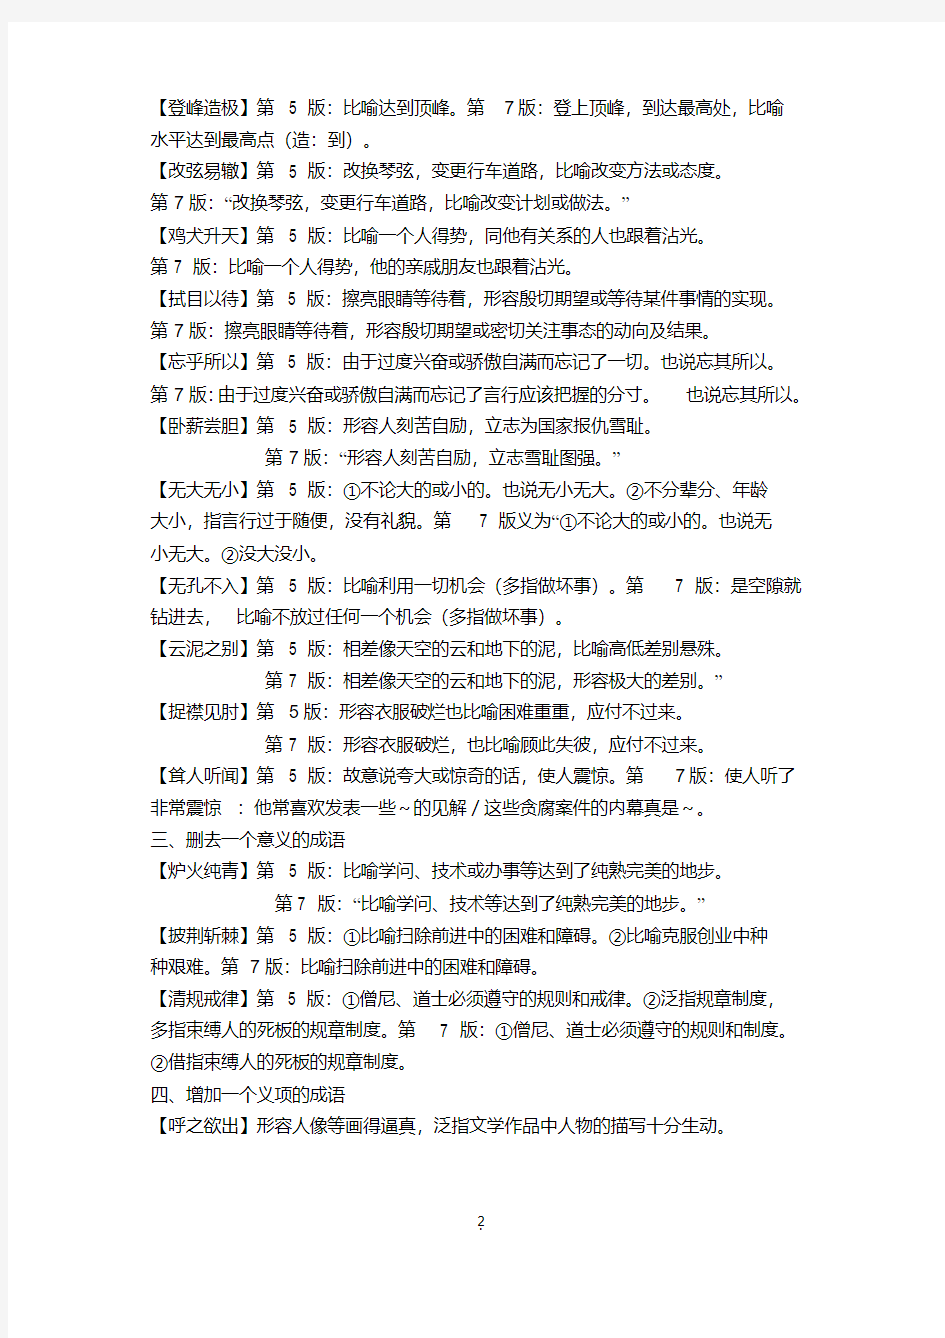 第7版《现代汉语词典》意义更新的成语